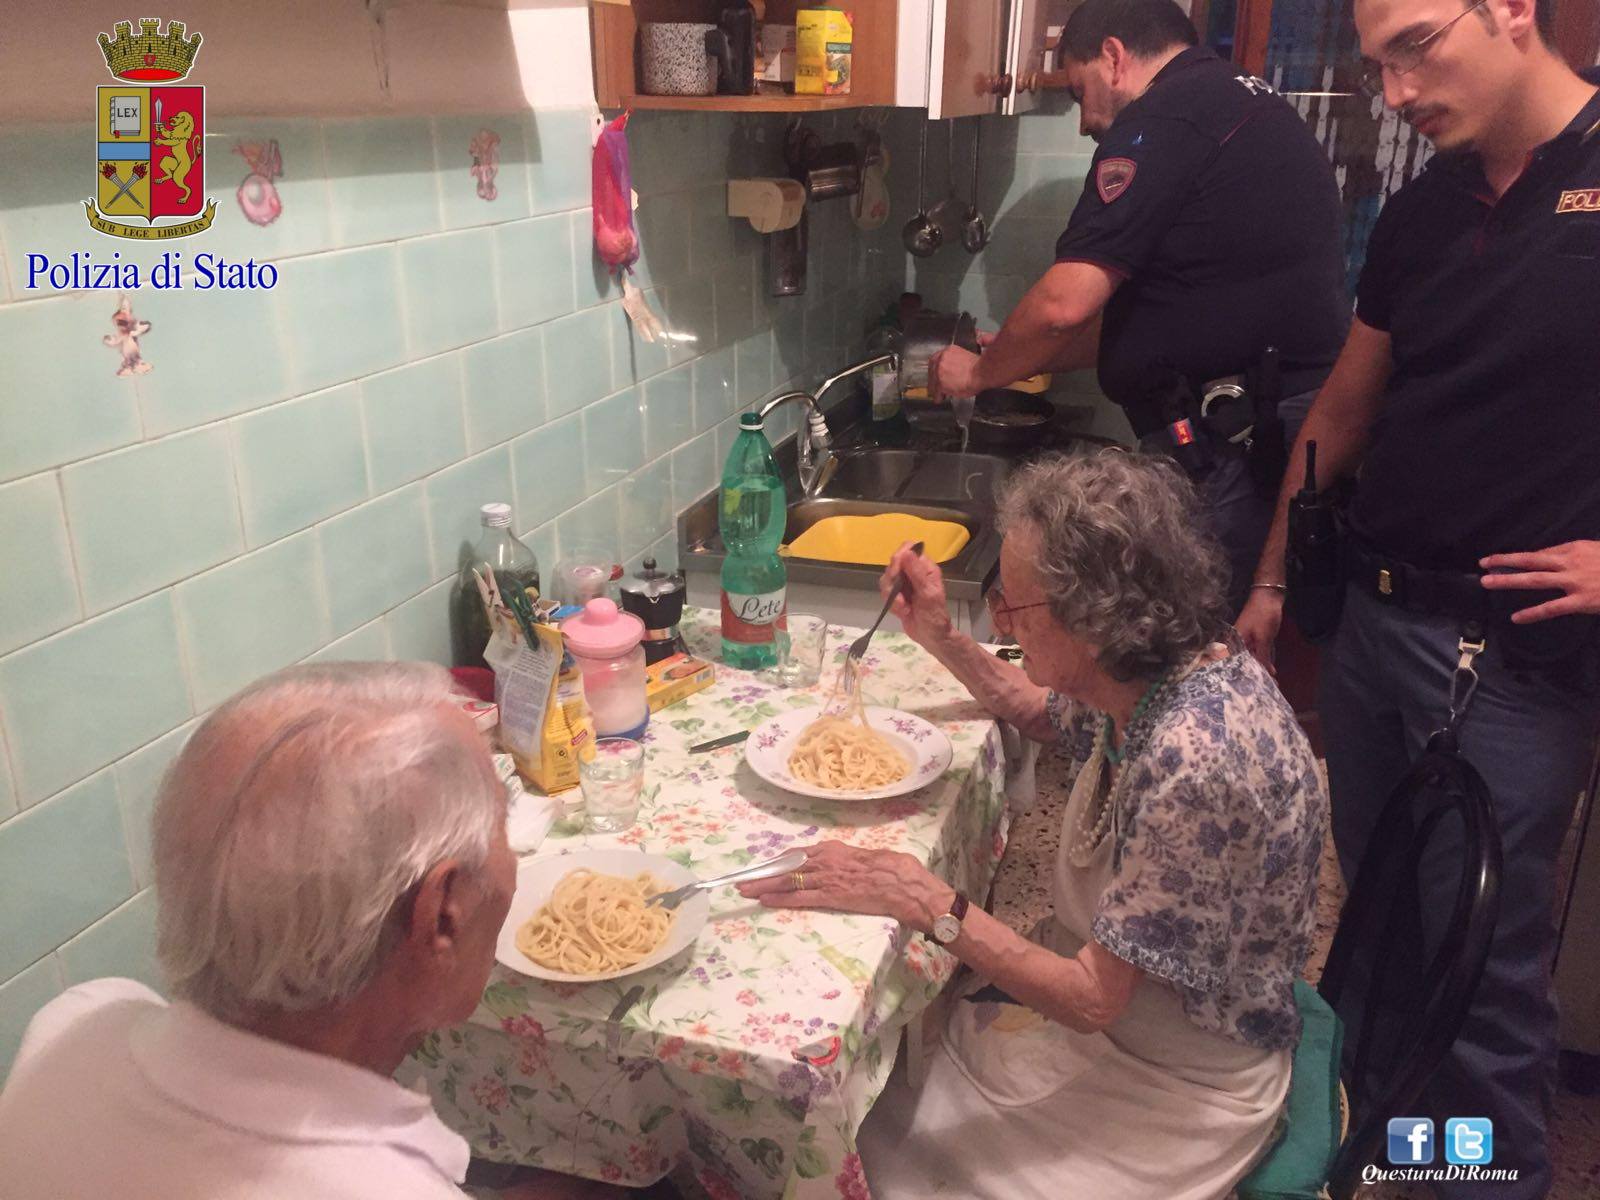 italian-couple-spaghetti-rome-police